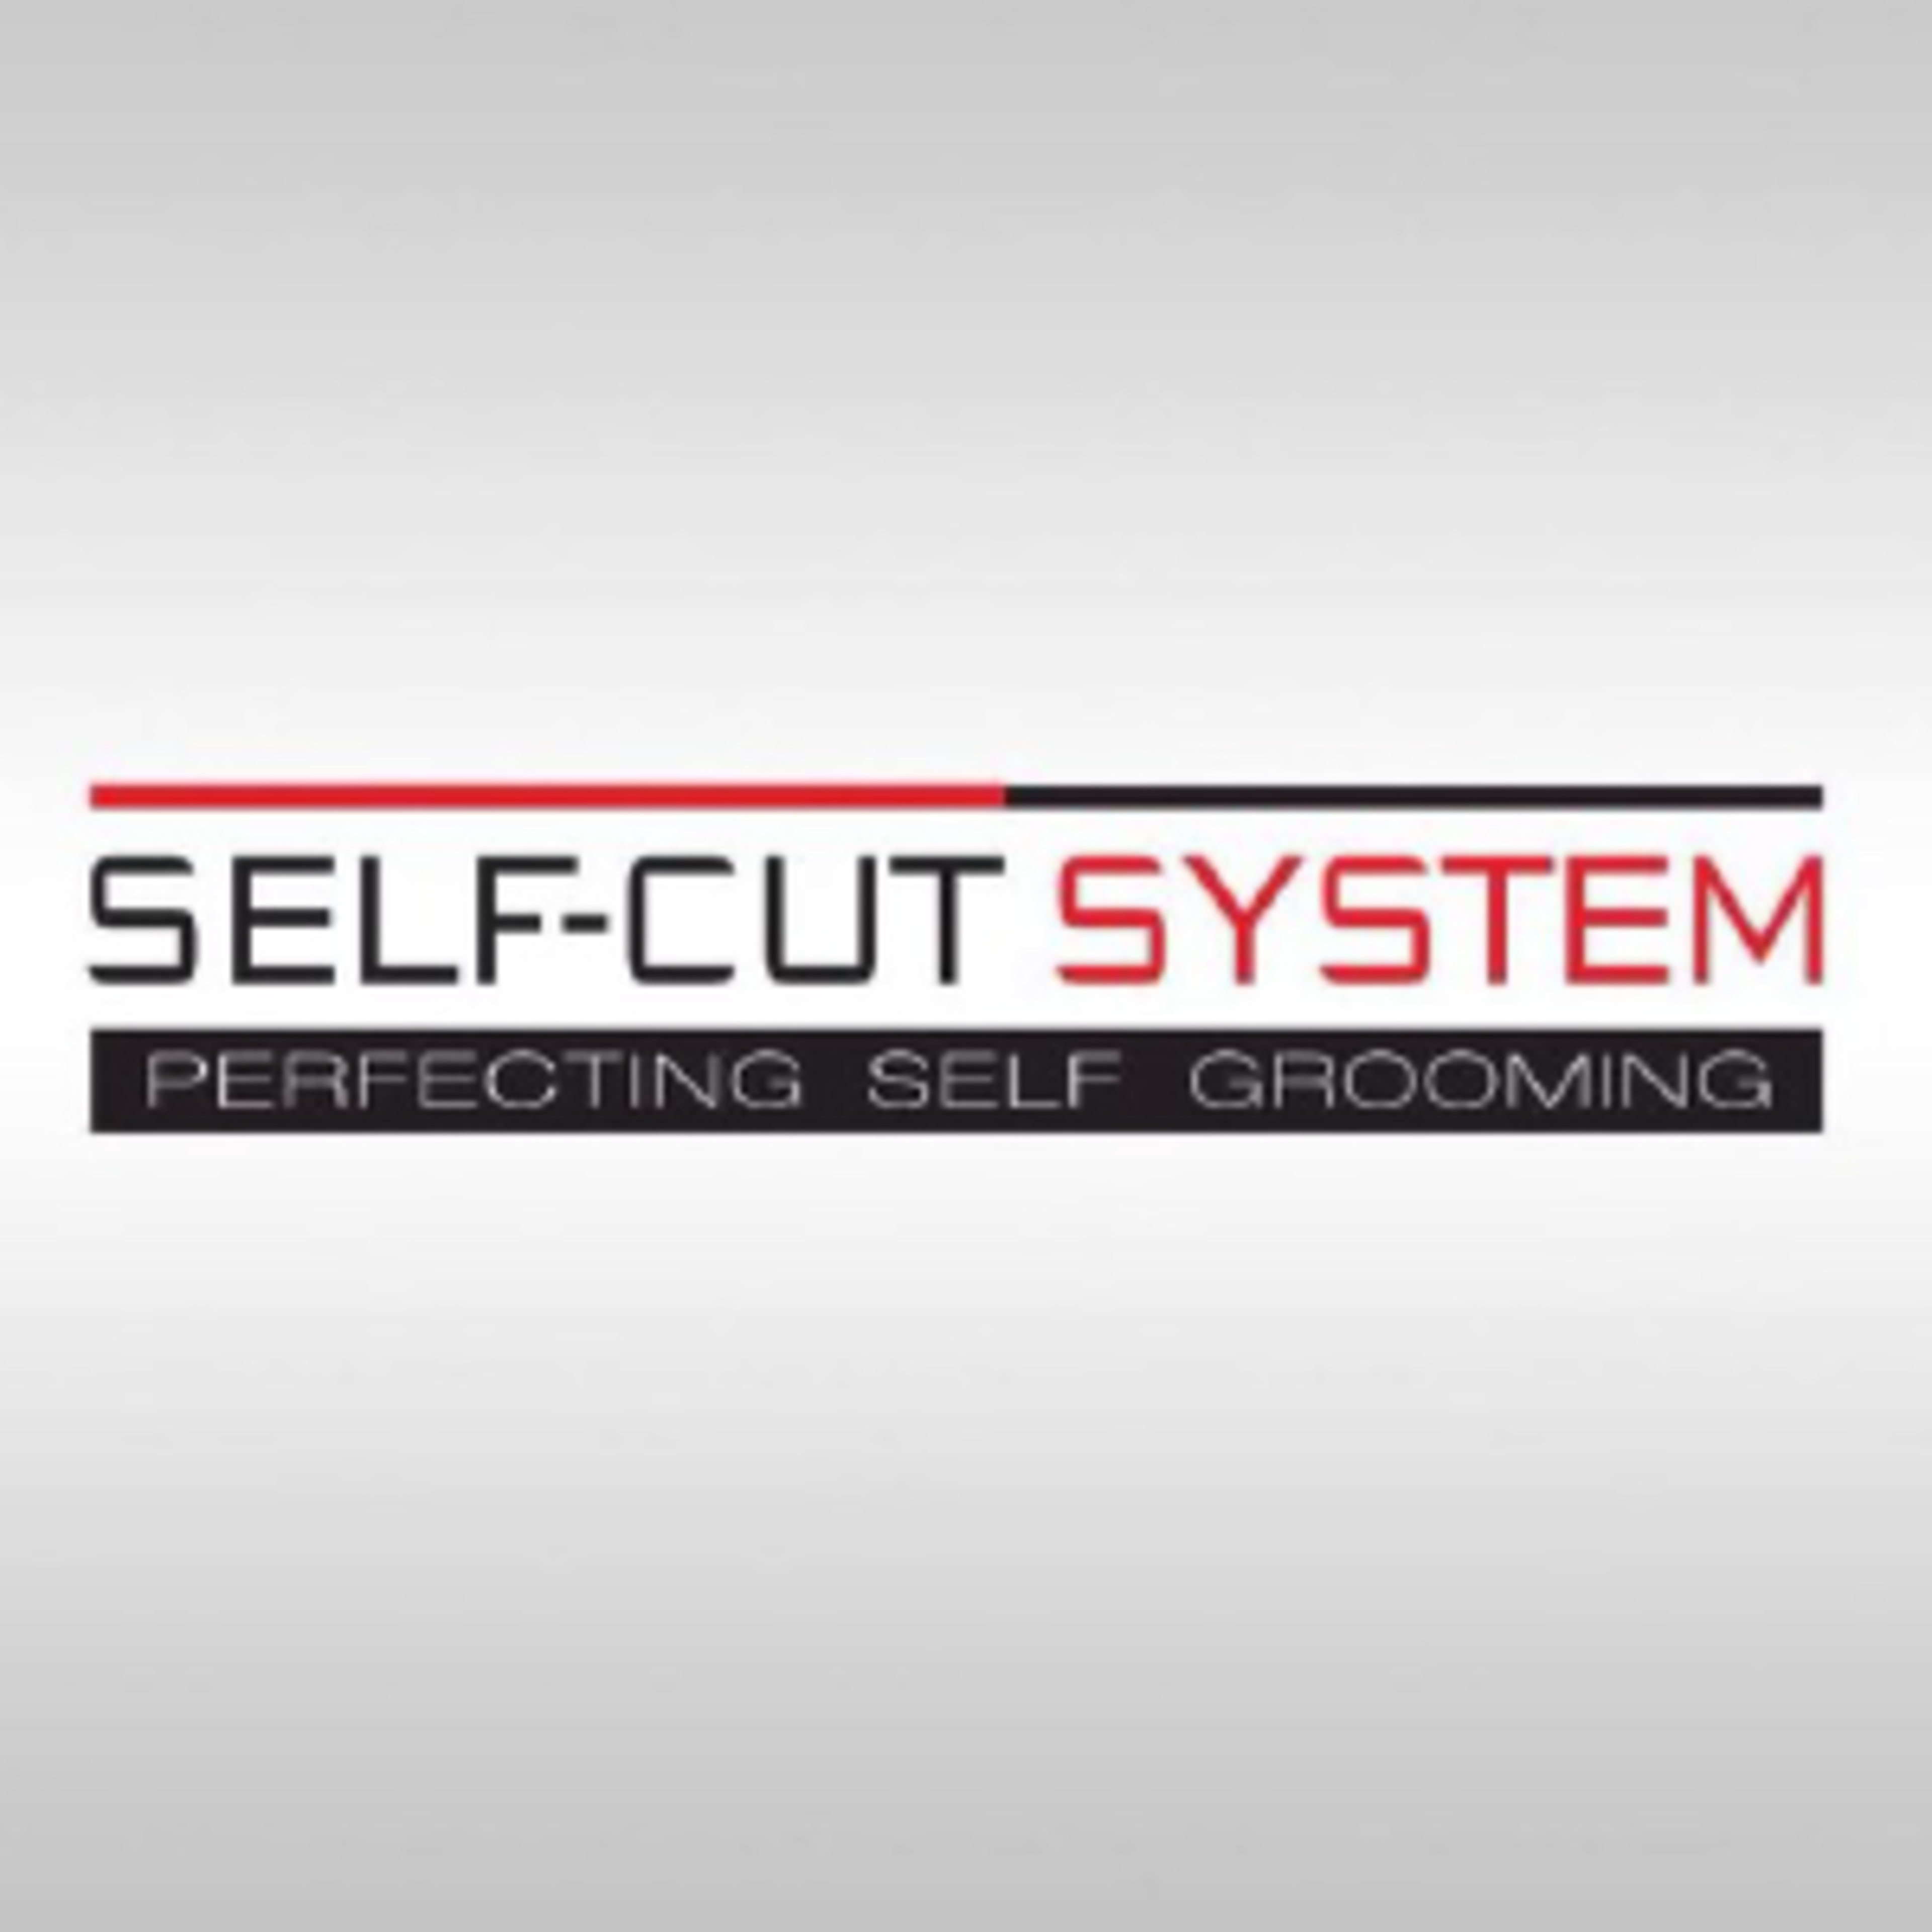 Self-Cut System Code